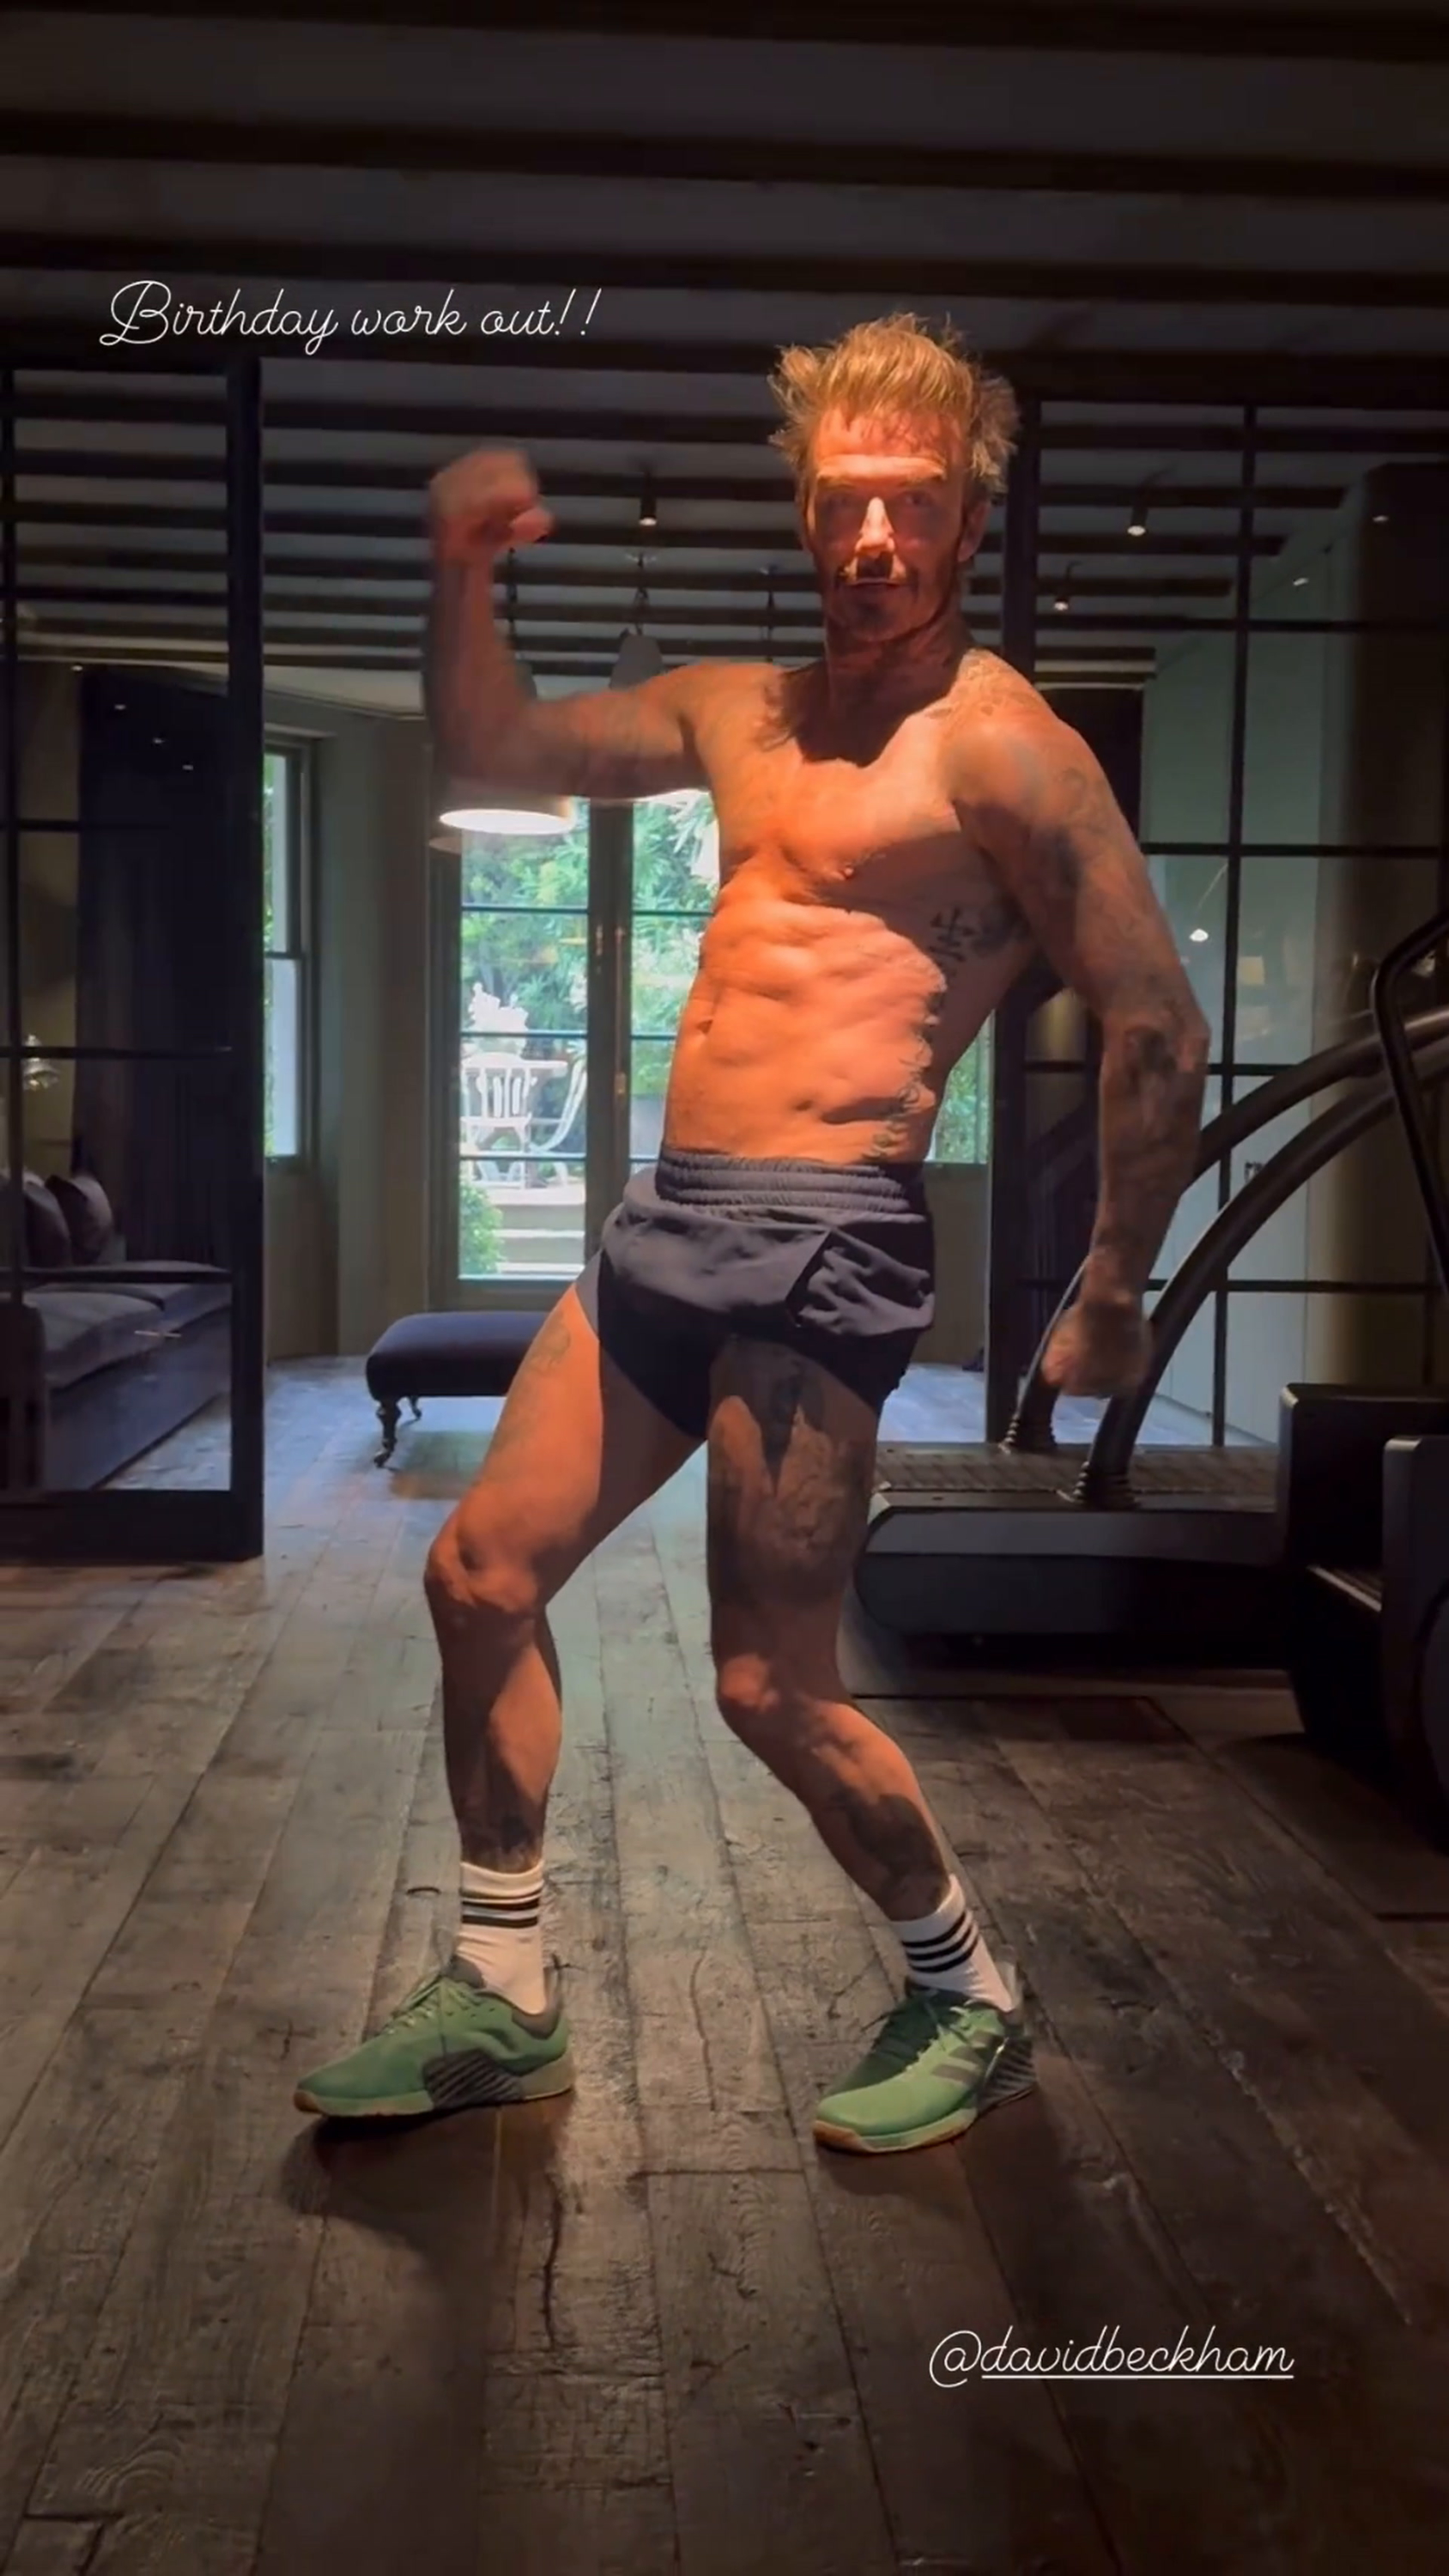 49 ans et toujours plus musclé, David Beckham dévoile sa séance de sport en vidéo pour son anniversaire